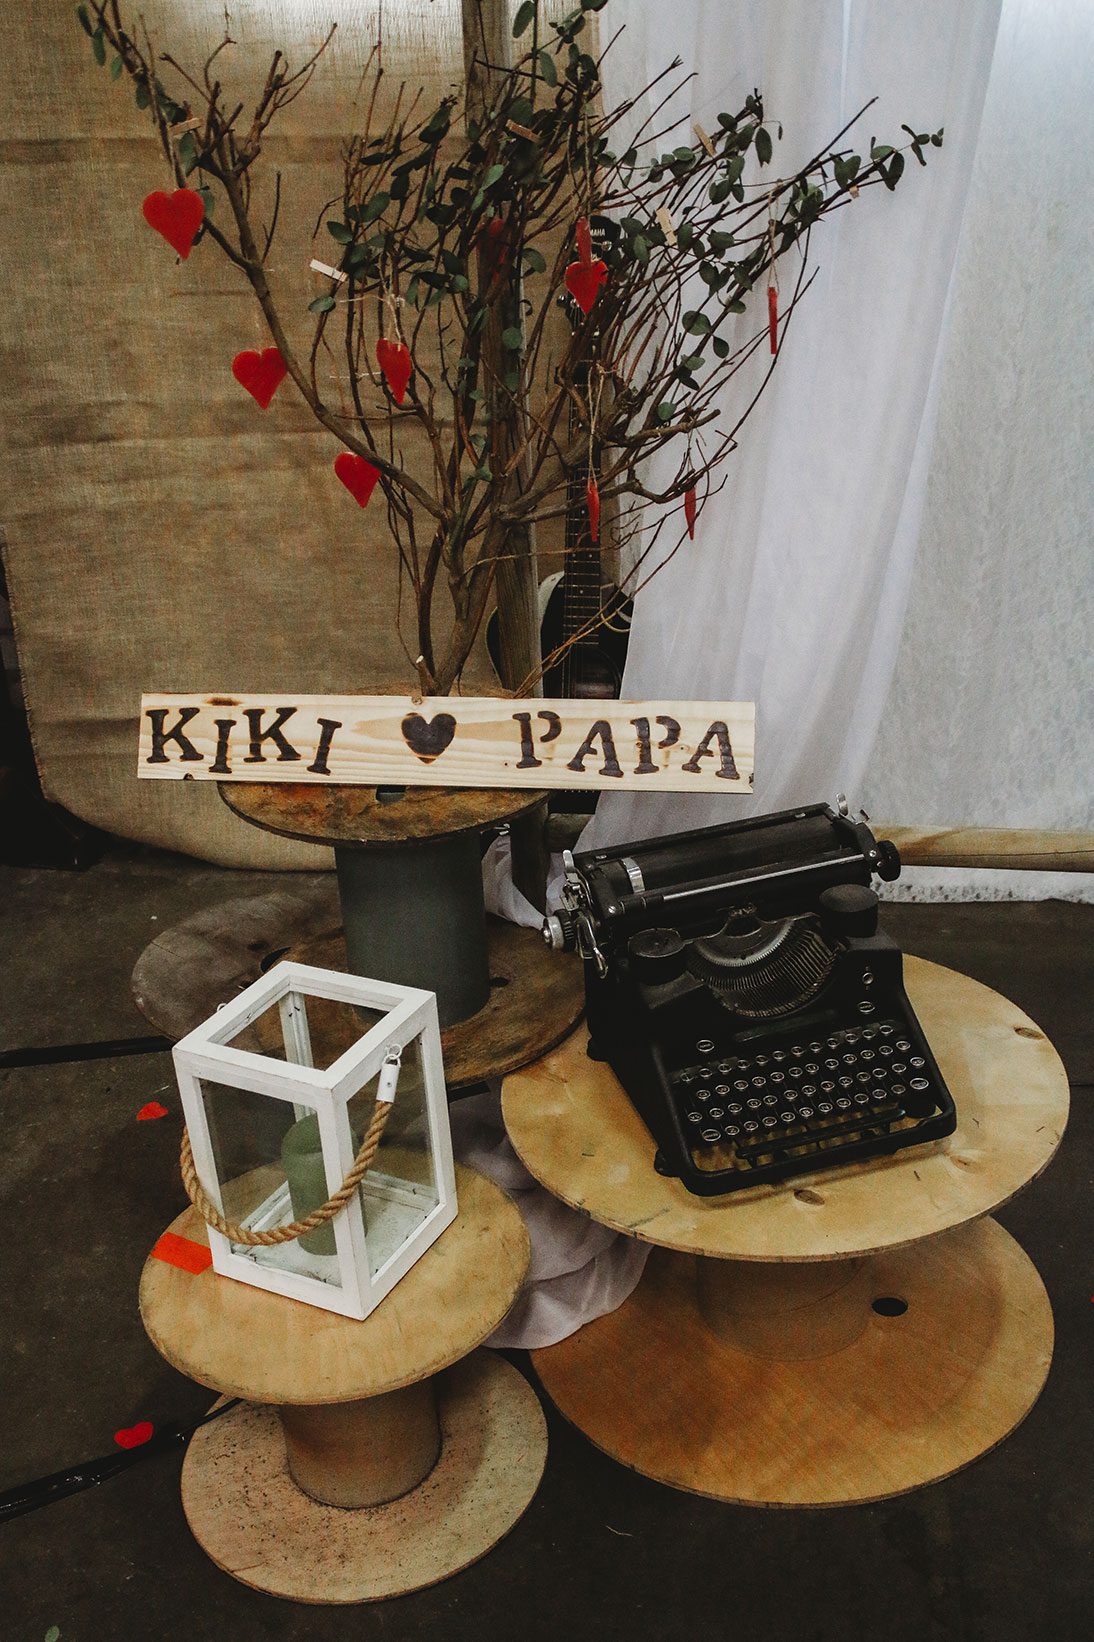 trouwen met papa liefslabel houten bord bewegwijzering bruiloft